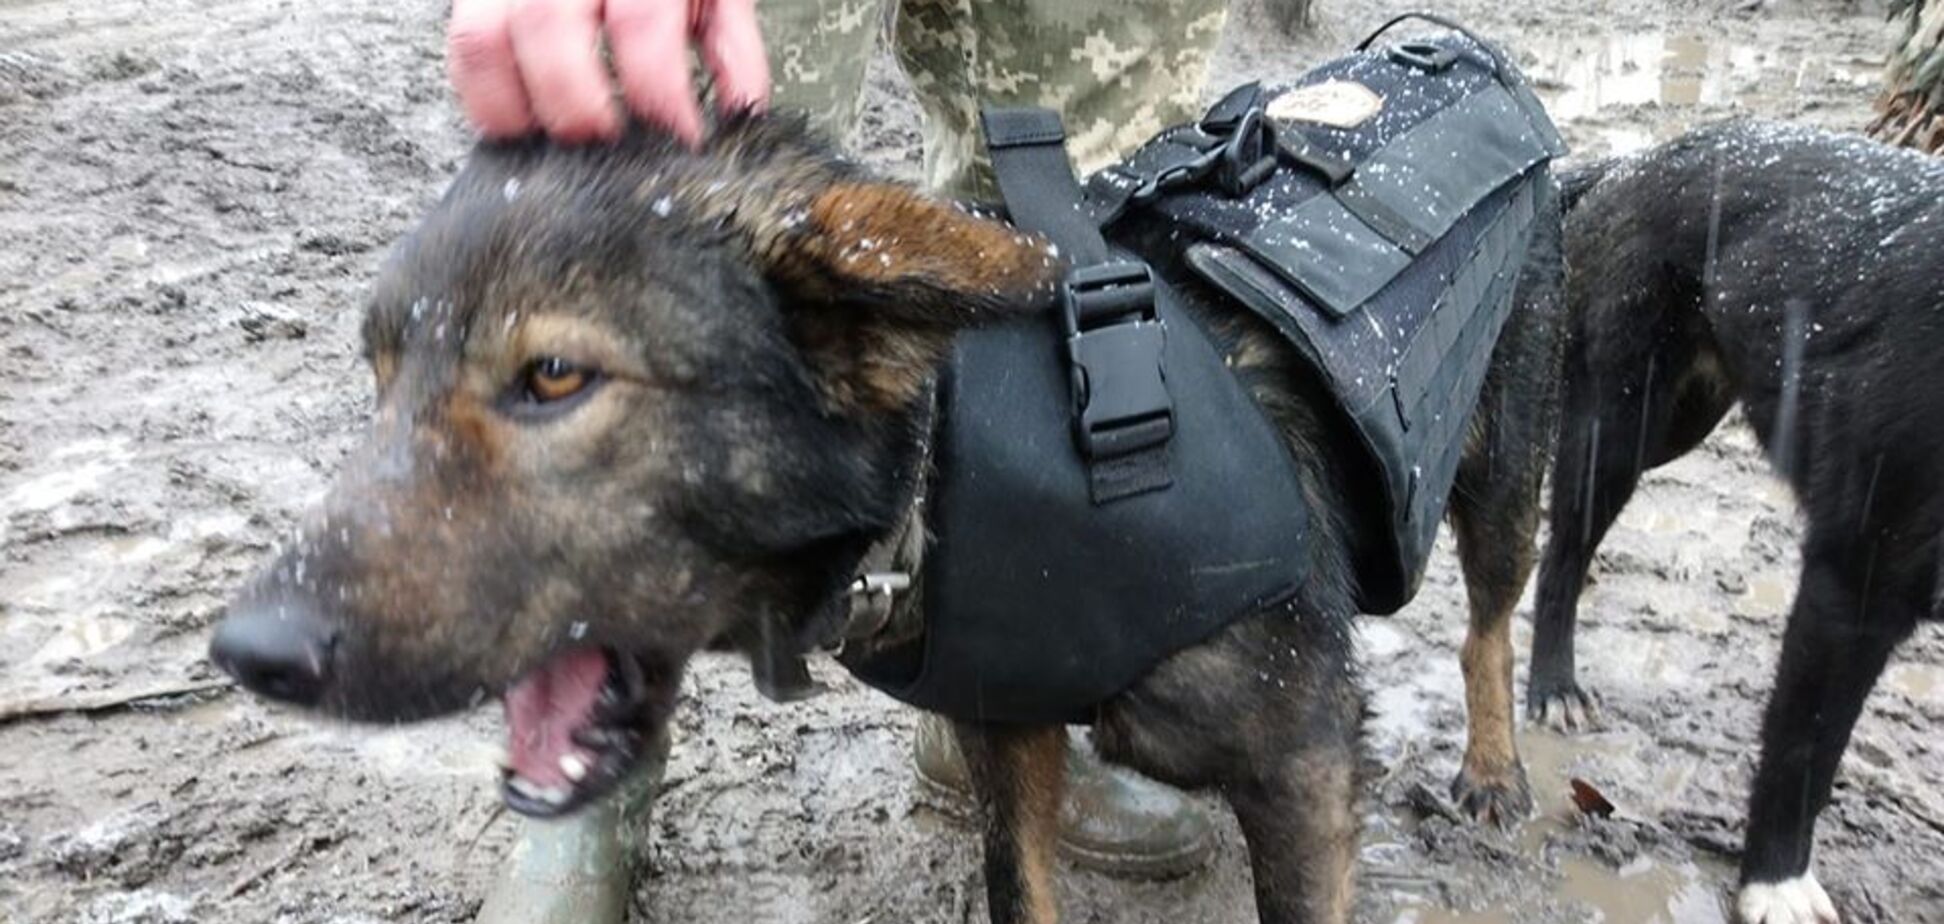 Був поранений, ходить в бронежилеті: на Донбасі показали легендарного бойового пса ЗСУ. Фотофакт